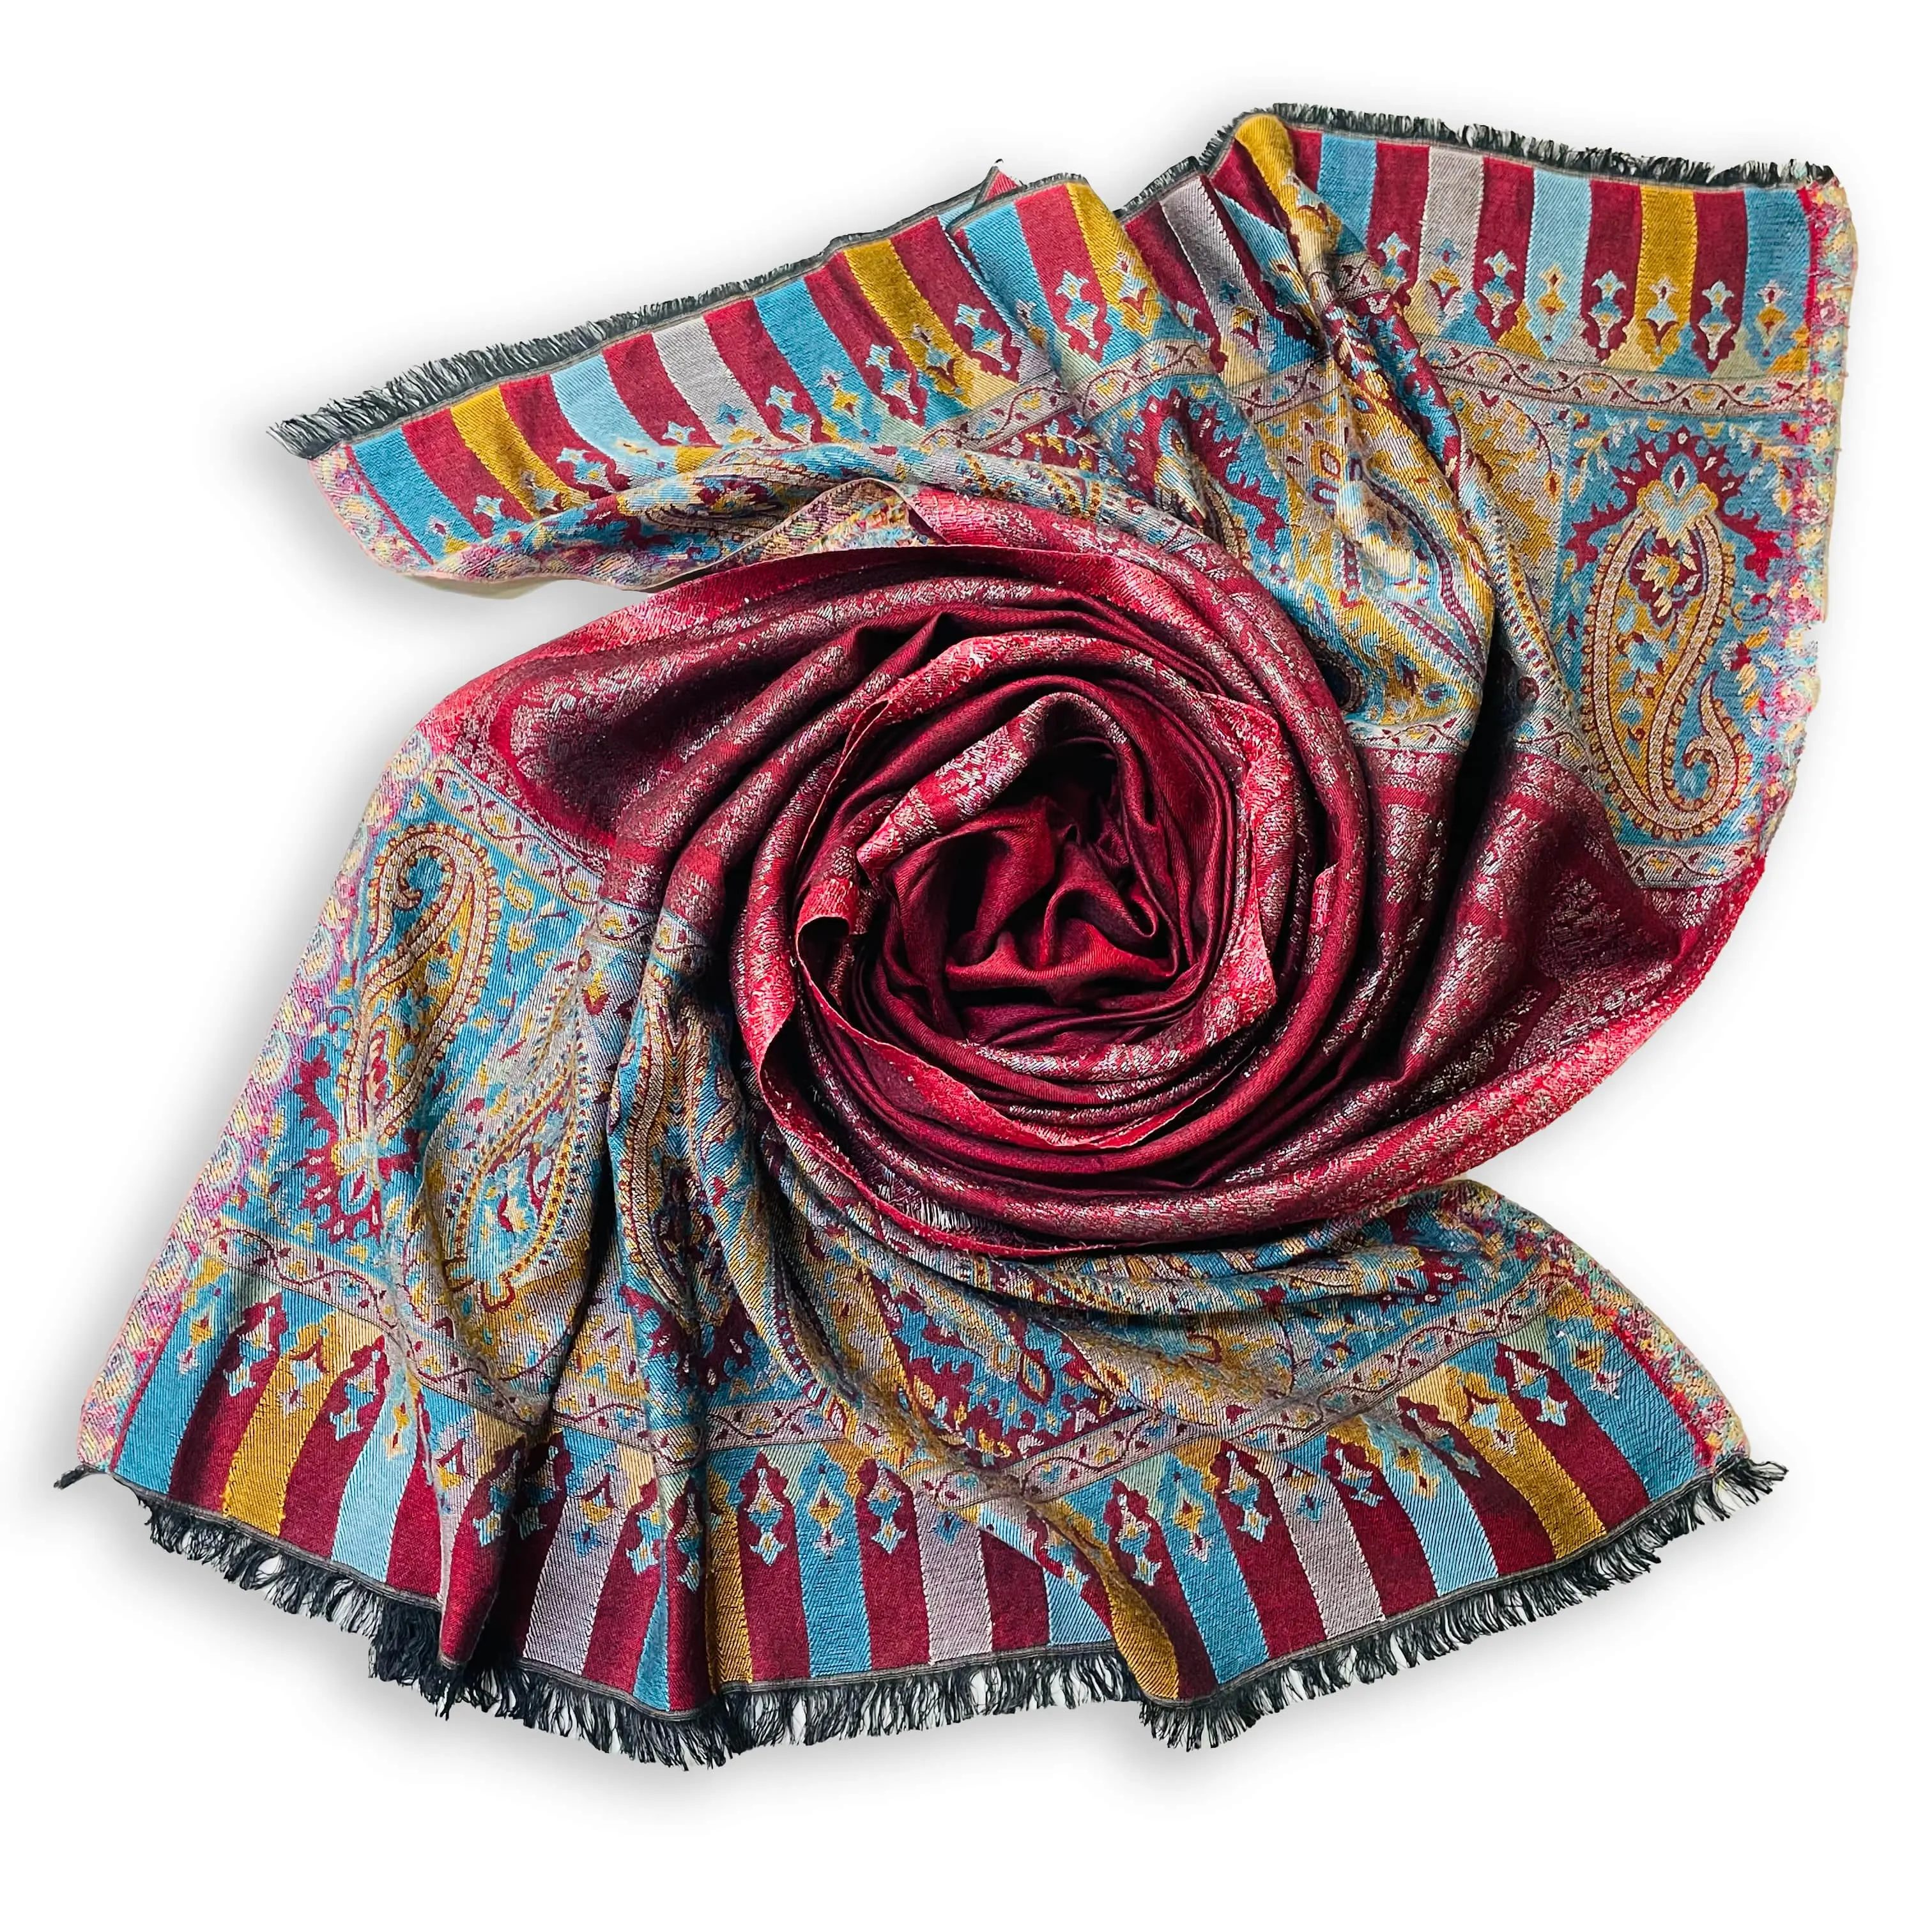 Luxus Modedesign Seiden schal Jacquard Kaschmir Schal für Damen zum Großhandels preis aus Indien erhältlich